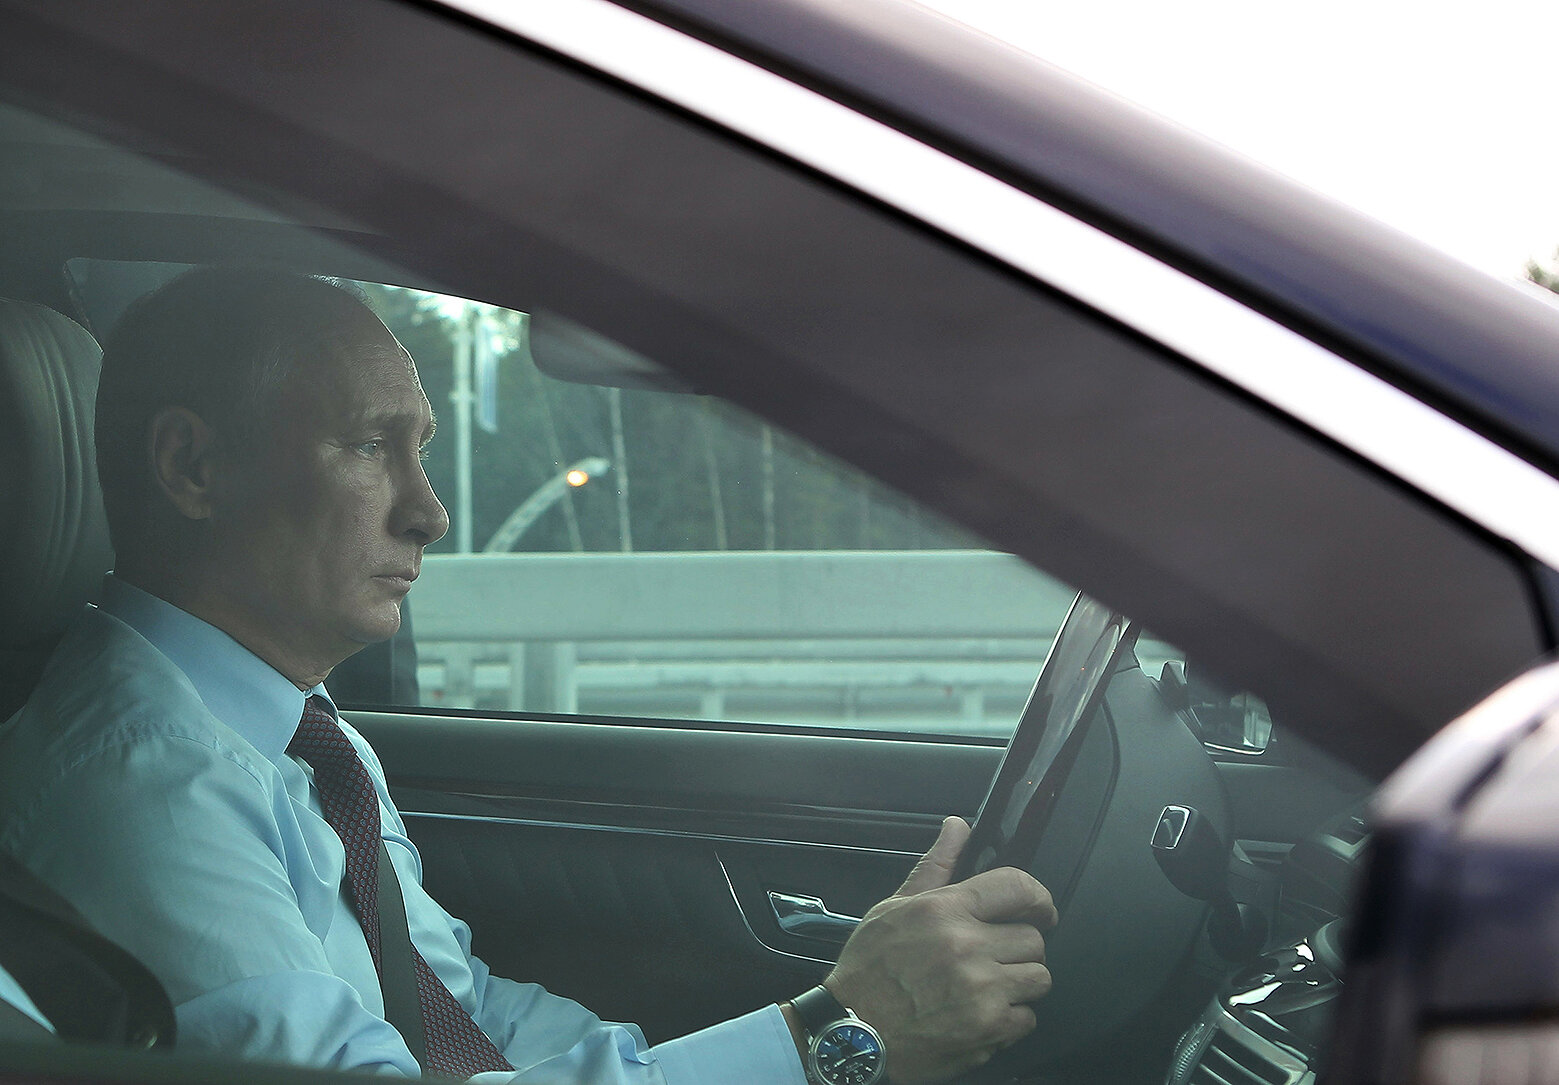 <p>Владимир Путин за рулем автомобиля перед торжественной церемонией запуска рабочего движения по северному участку Западного скоростного диаметра (ЗСД) в Санкт-Петербурге 2 августа 2013 года.</p>